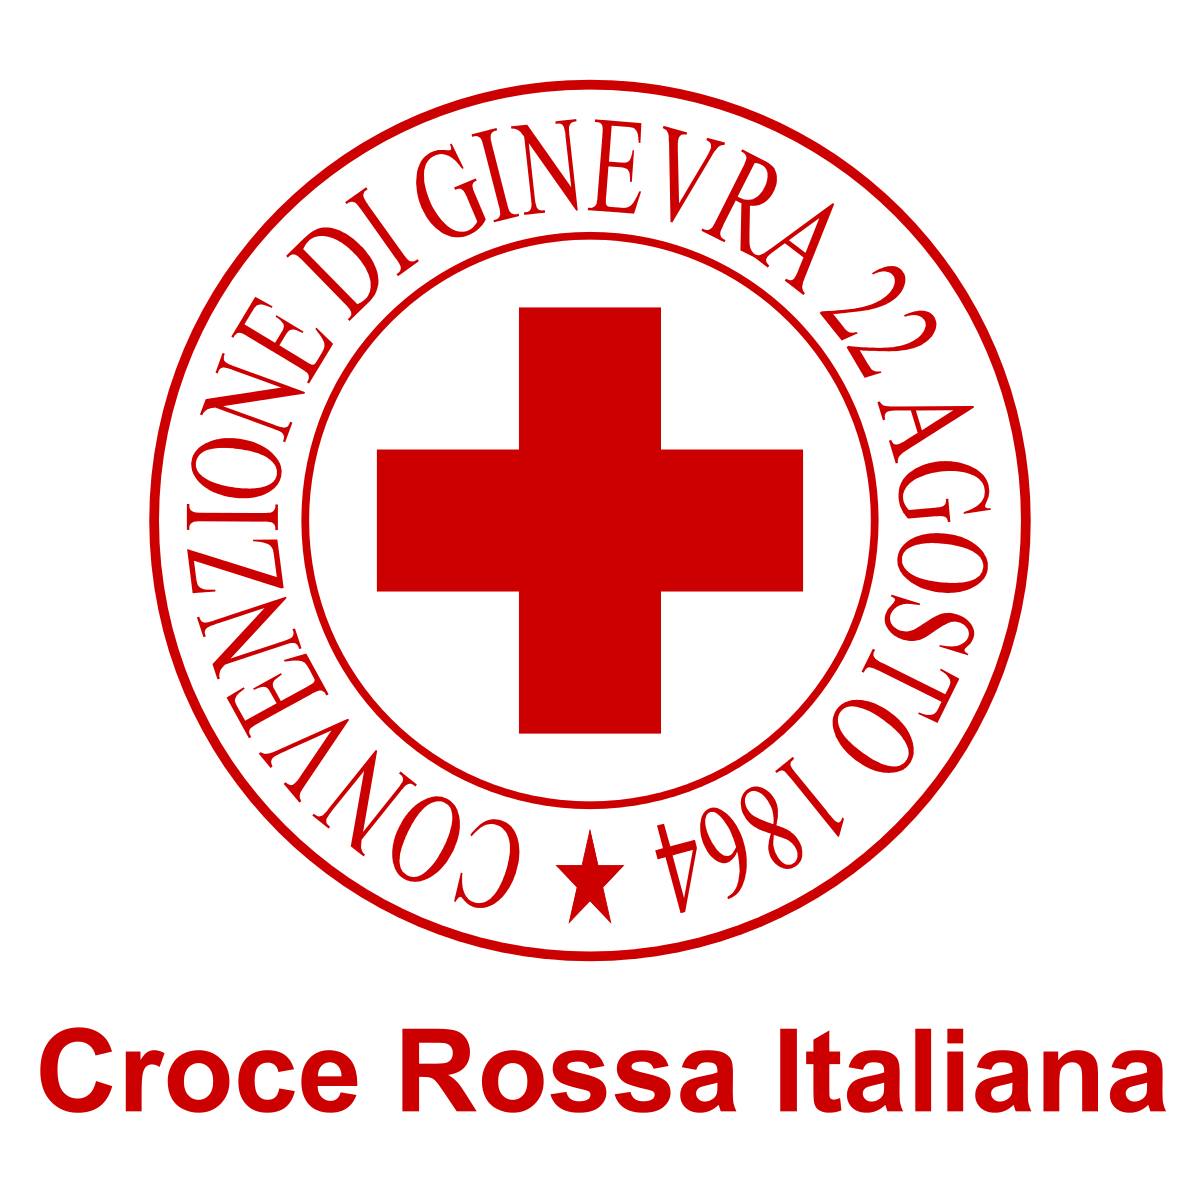 Immagine che raffigura Croce rossa di Calcinate